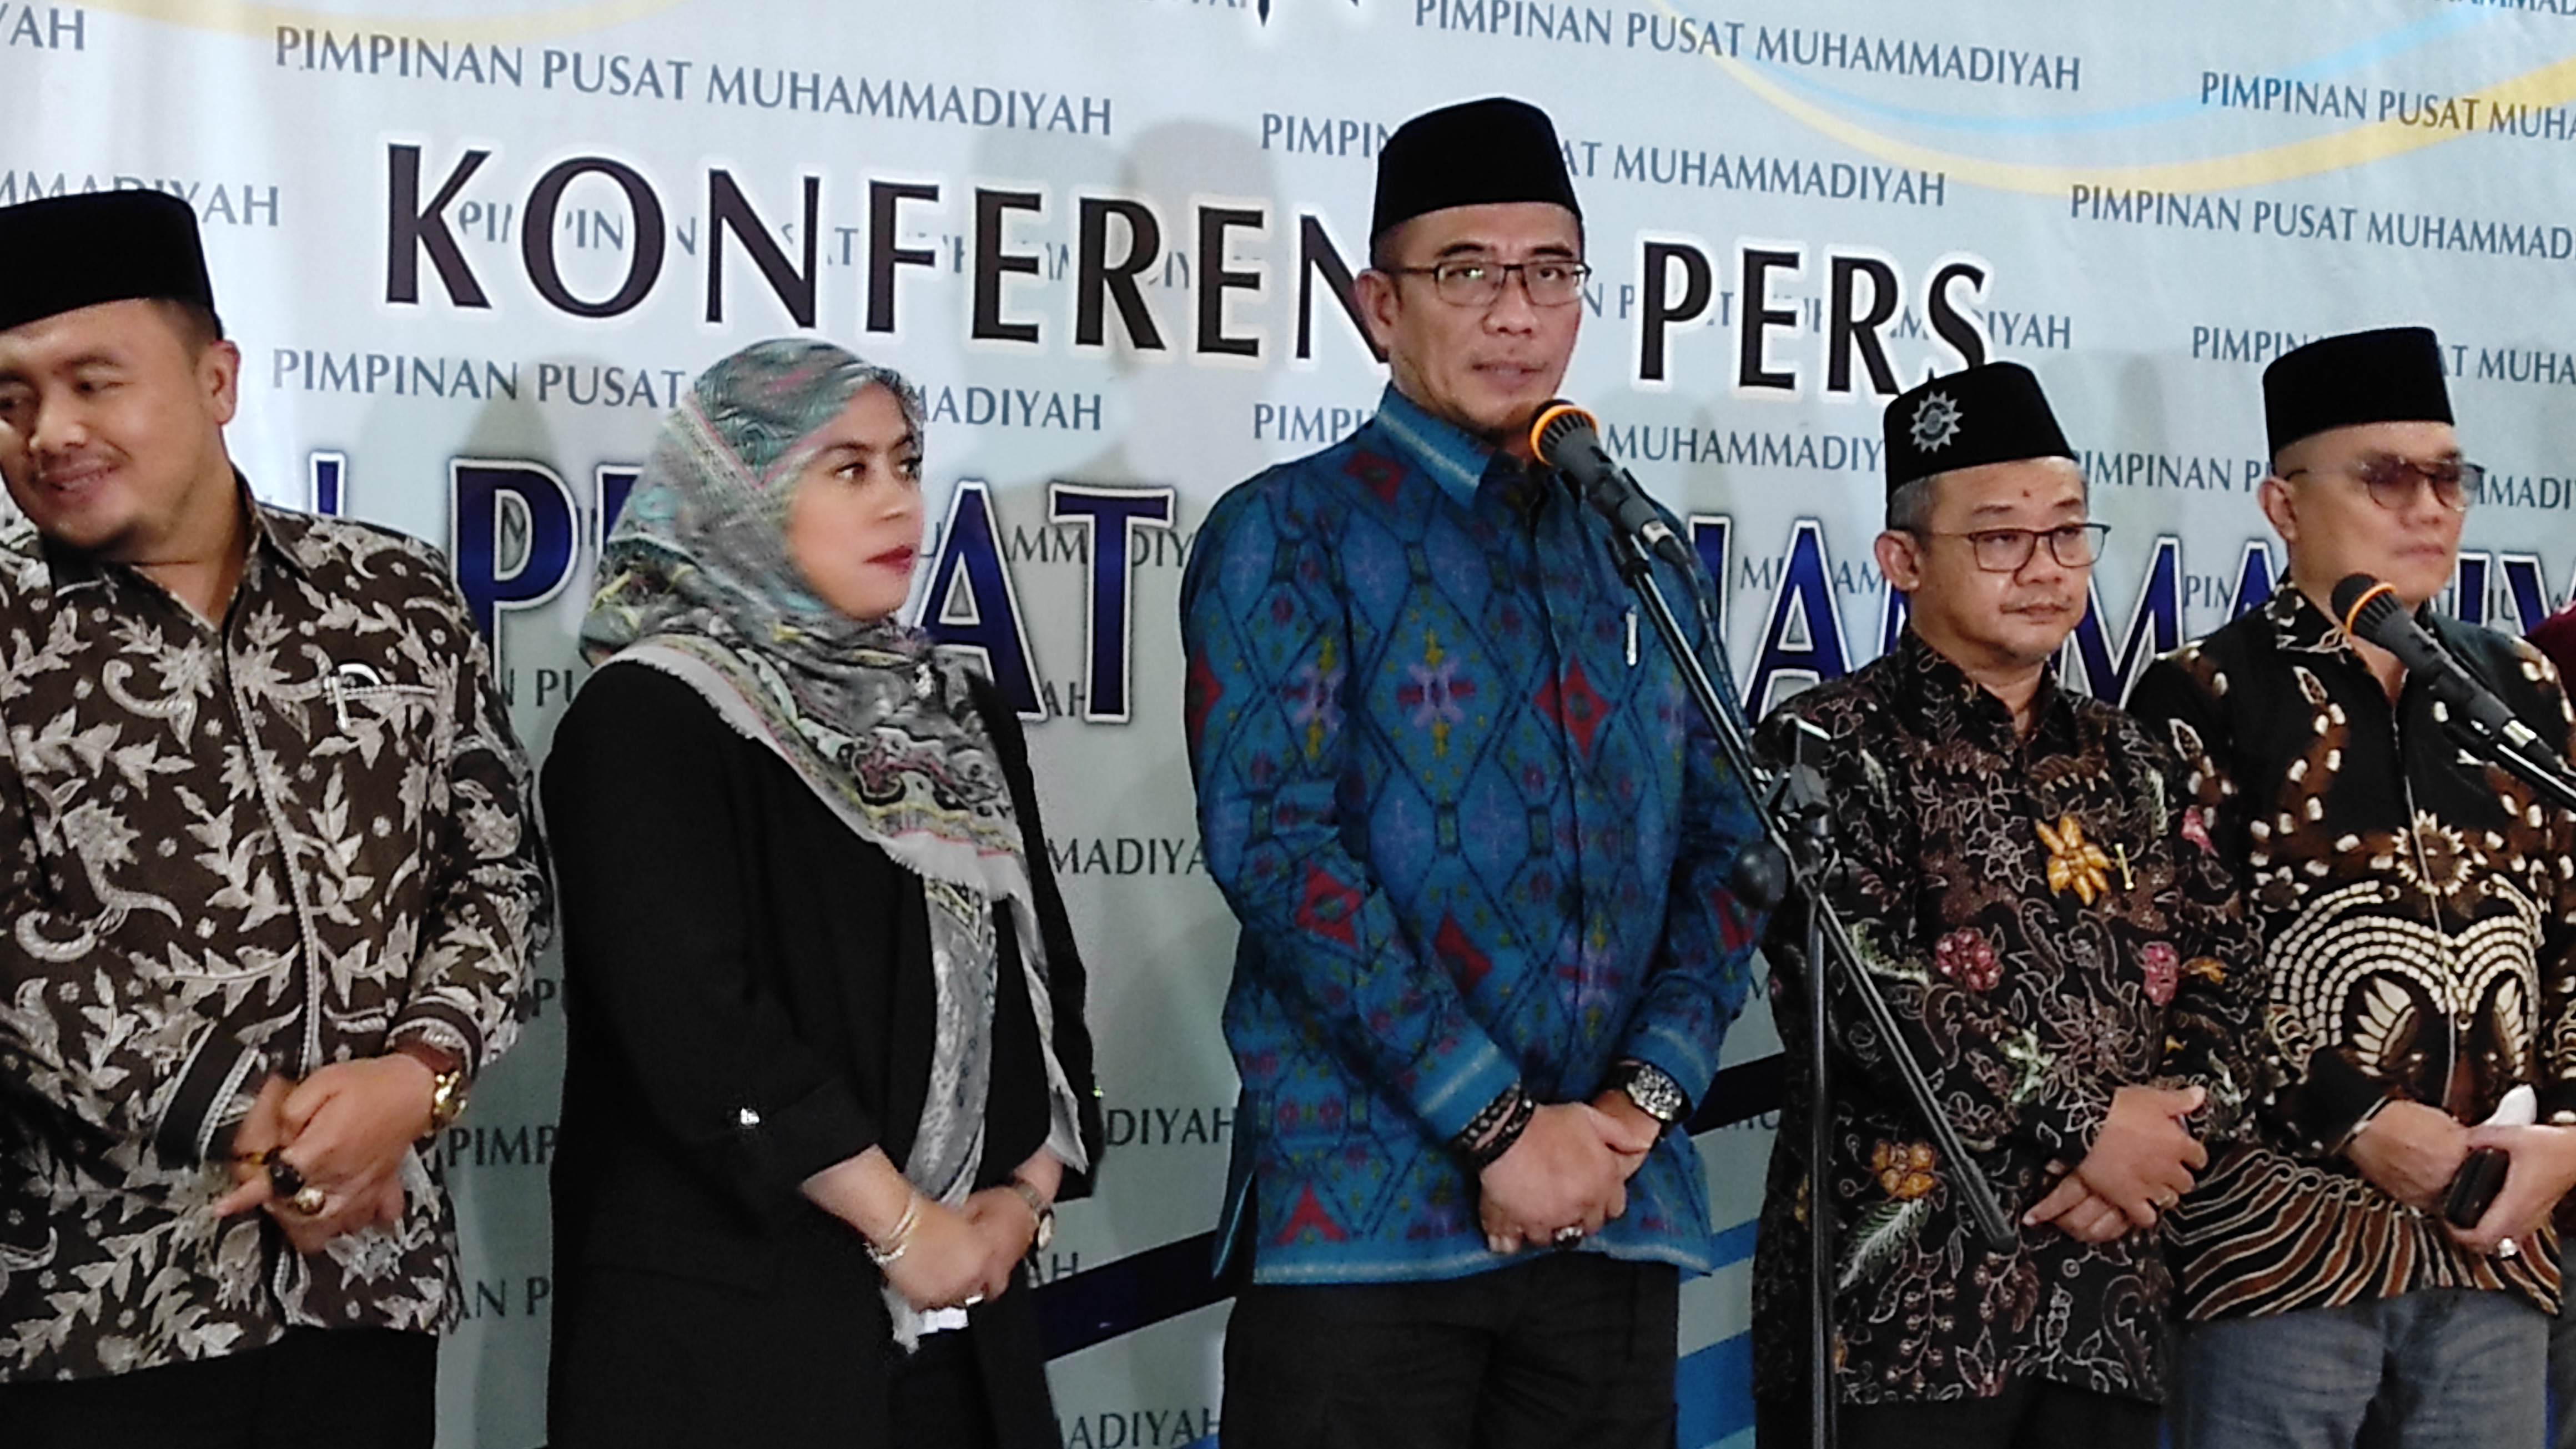 Tahapan Pemilu 2024 Dipastikan sesuai Jadwal, Ini Kata Ketua KPU Hasyim Asy'ari